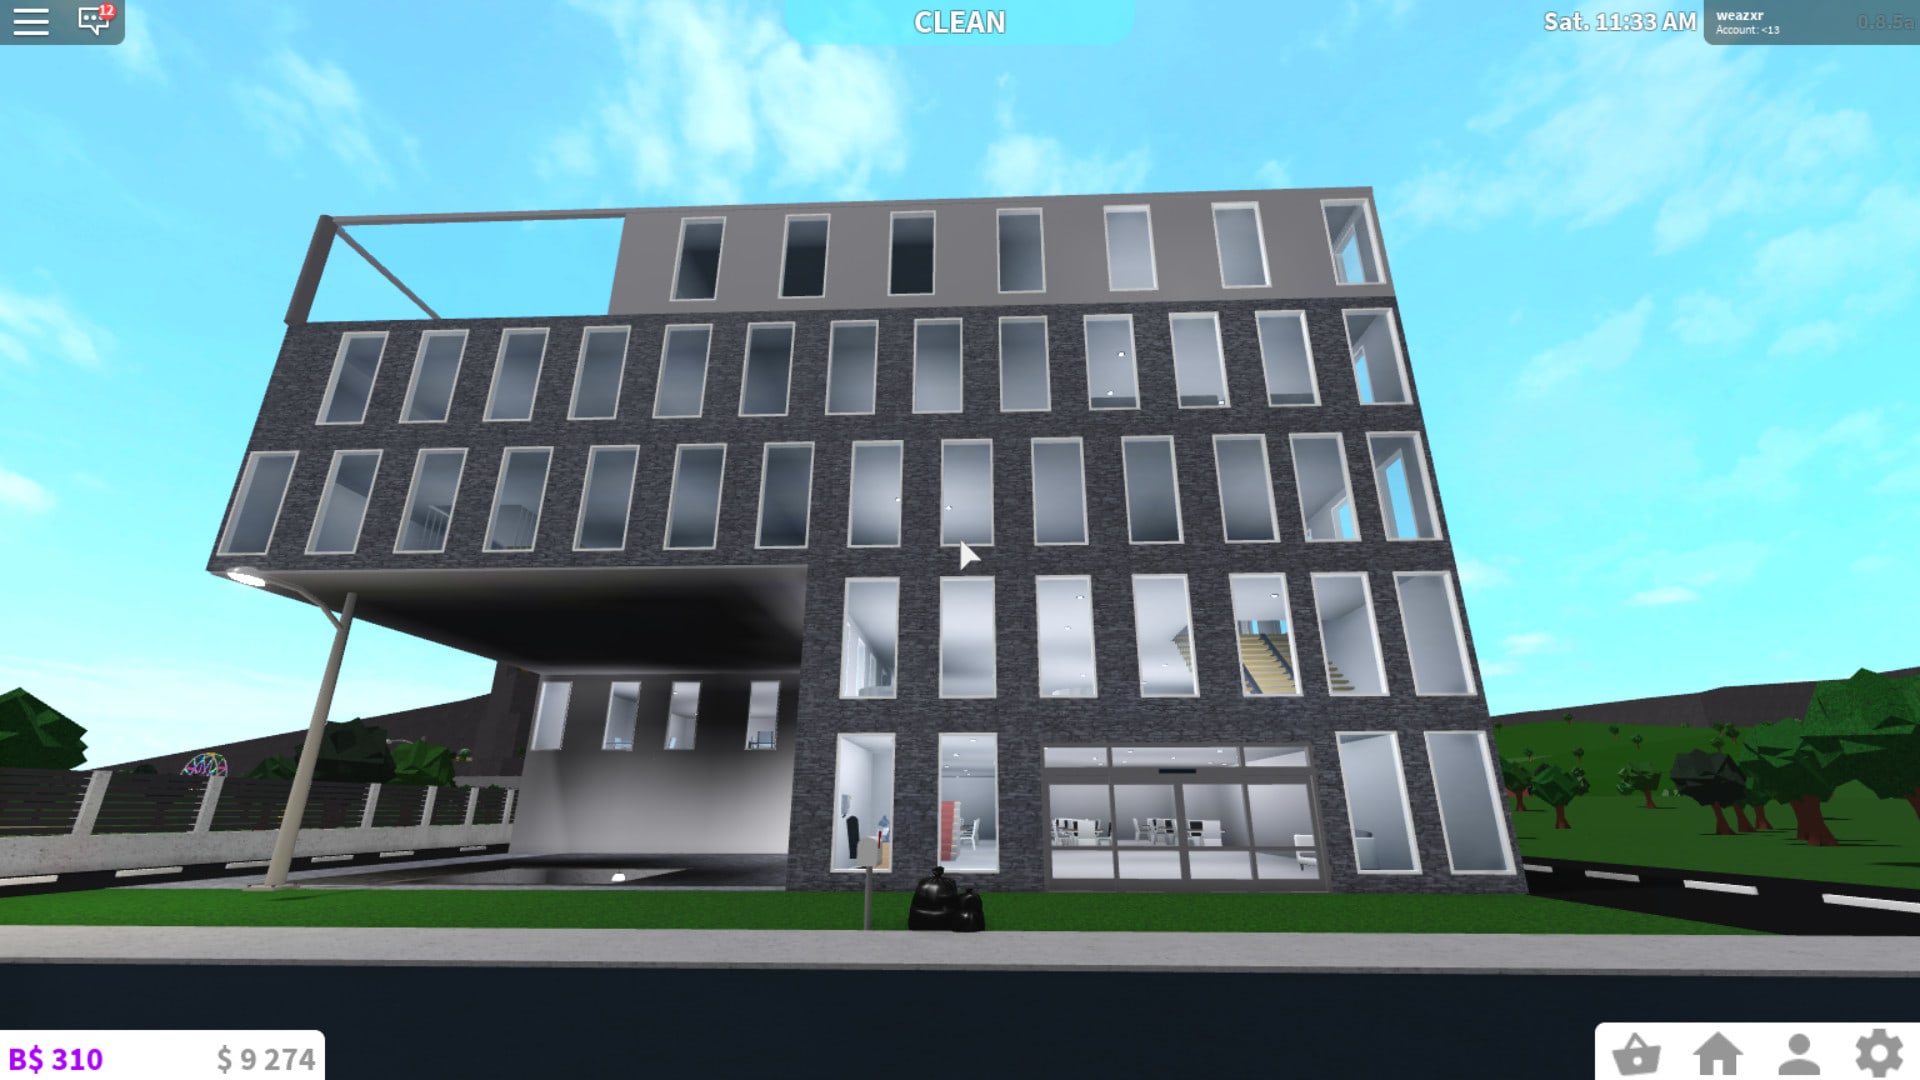 Build A Hotel In Bloxburg By Weazxr